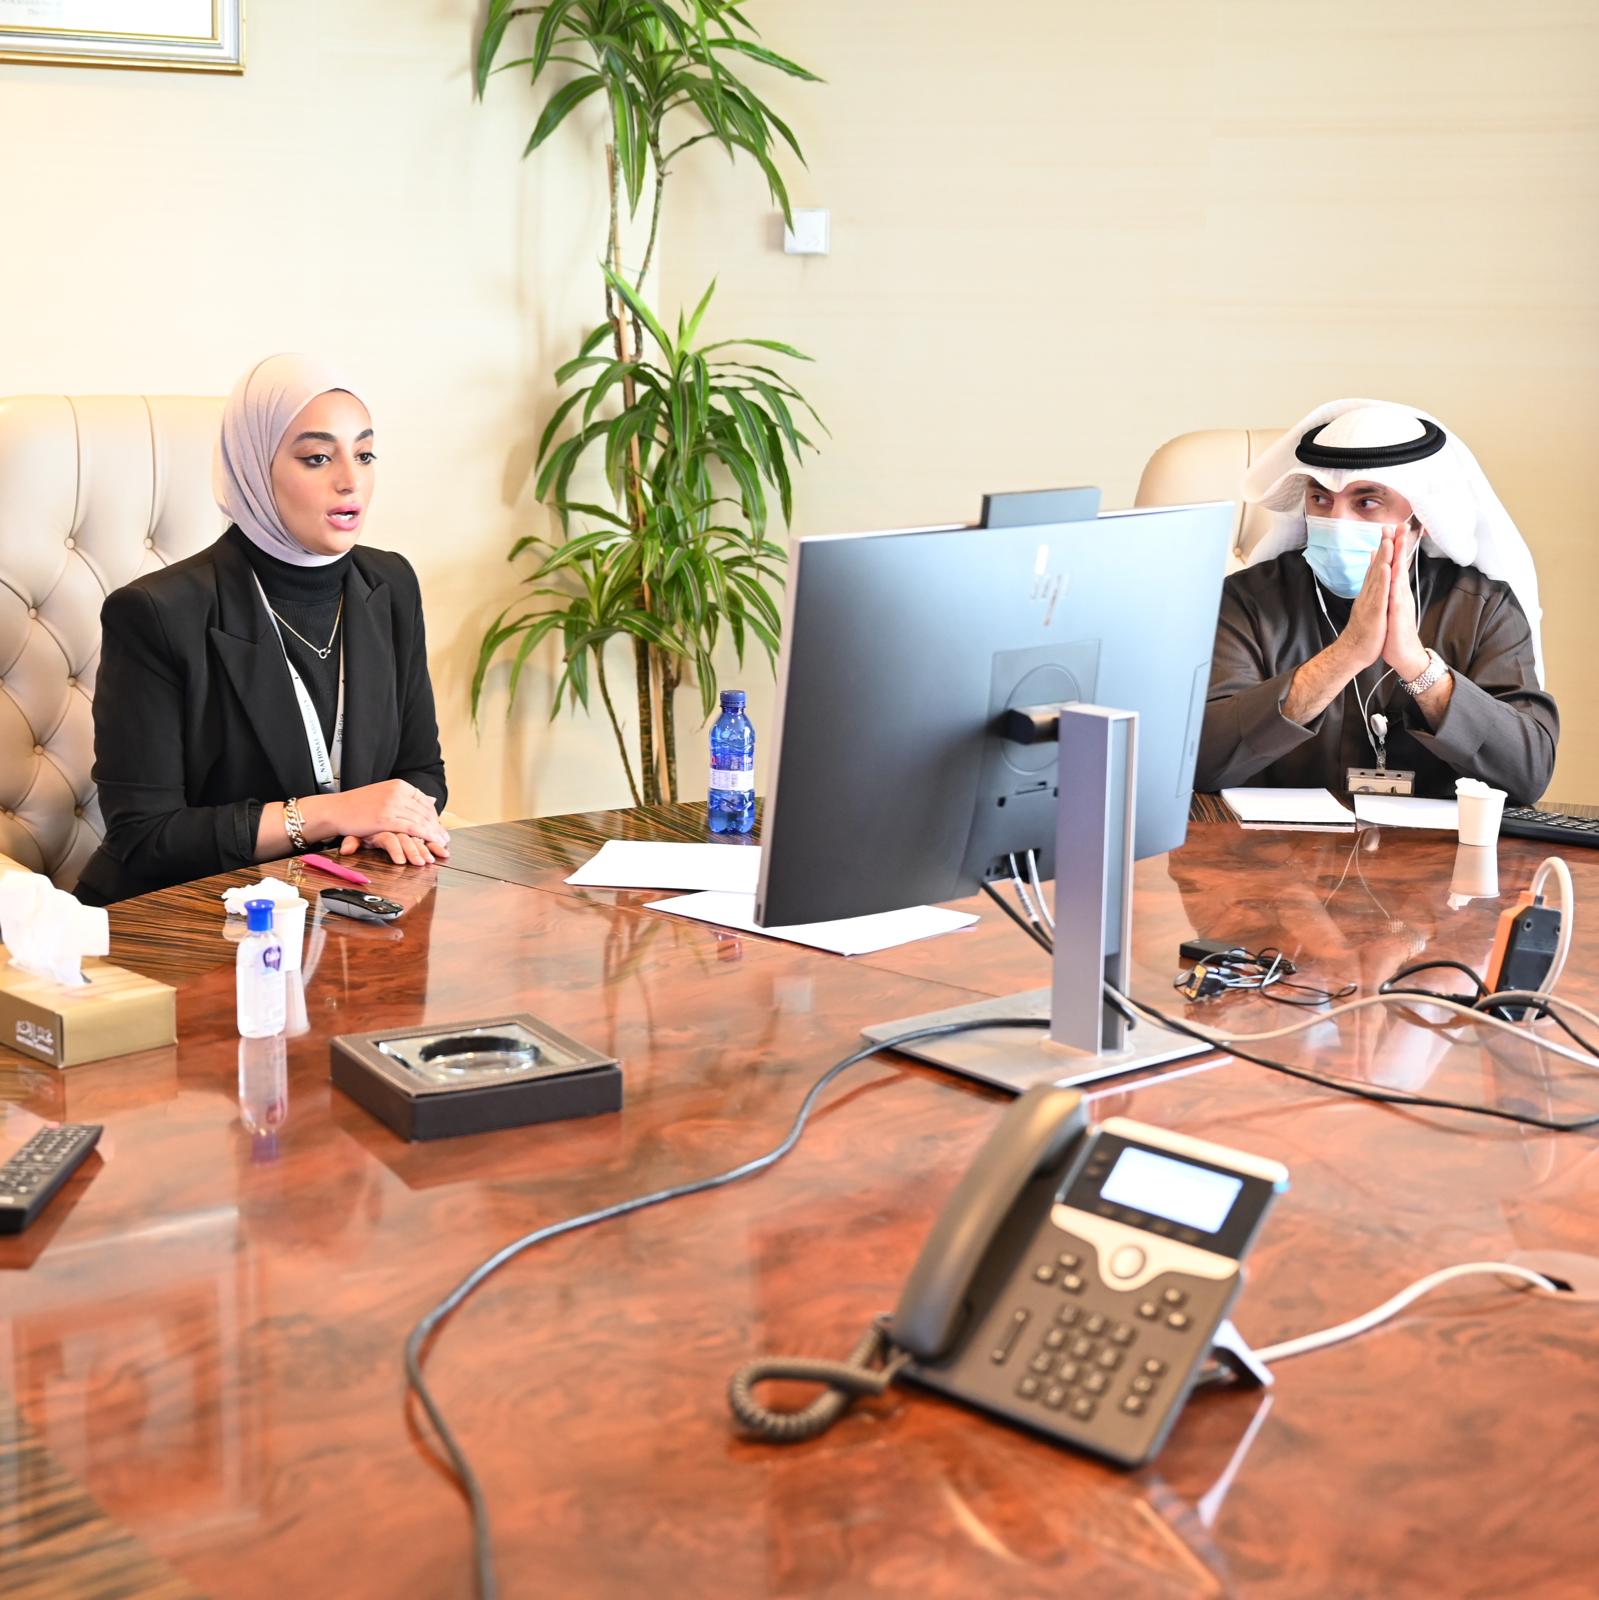 إدارات التدريب والمنظمات والمراسم بالمجلس ينظمون برنامجا تدريبياً لمجلس الشورى البحريني